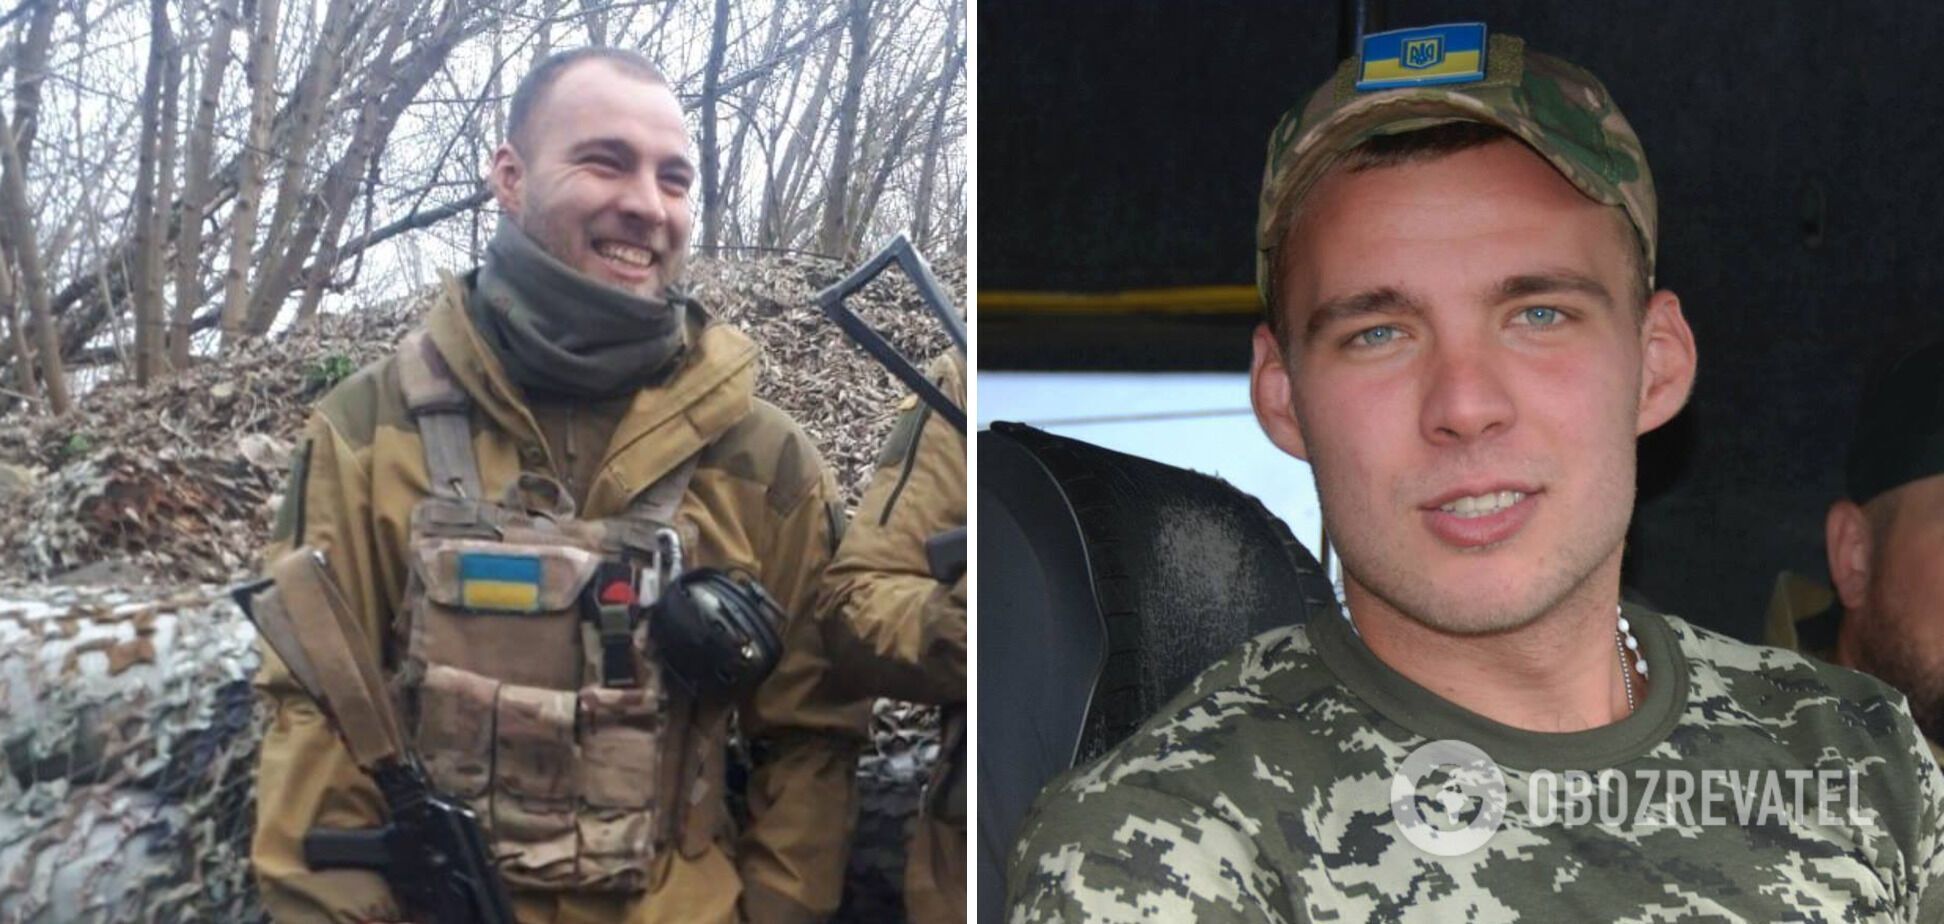 Защитник Украины "Карабин" всегда улыбался на фото